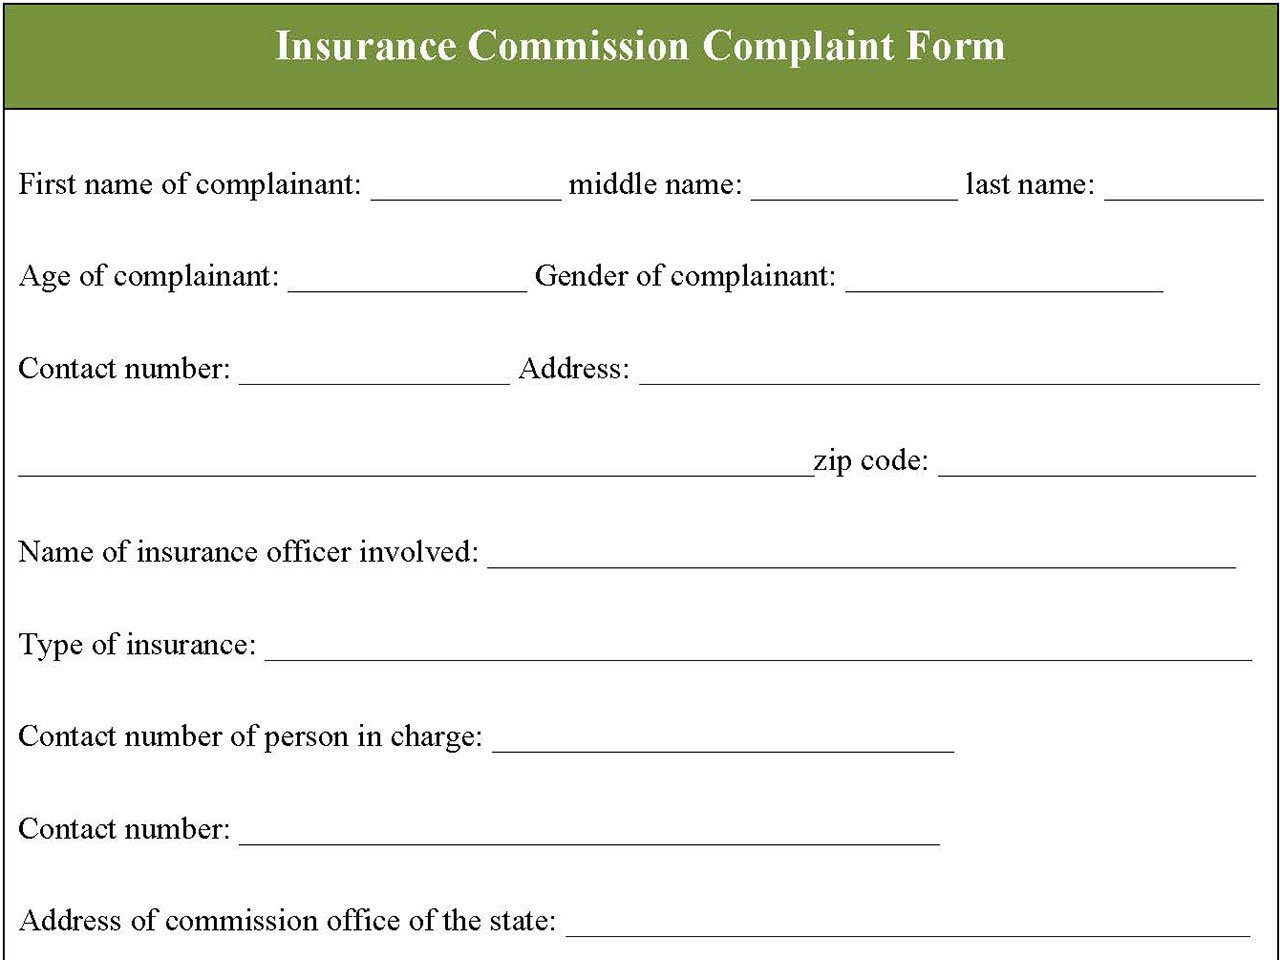 Insurance Commission Complaint Form